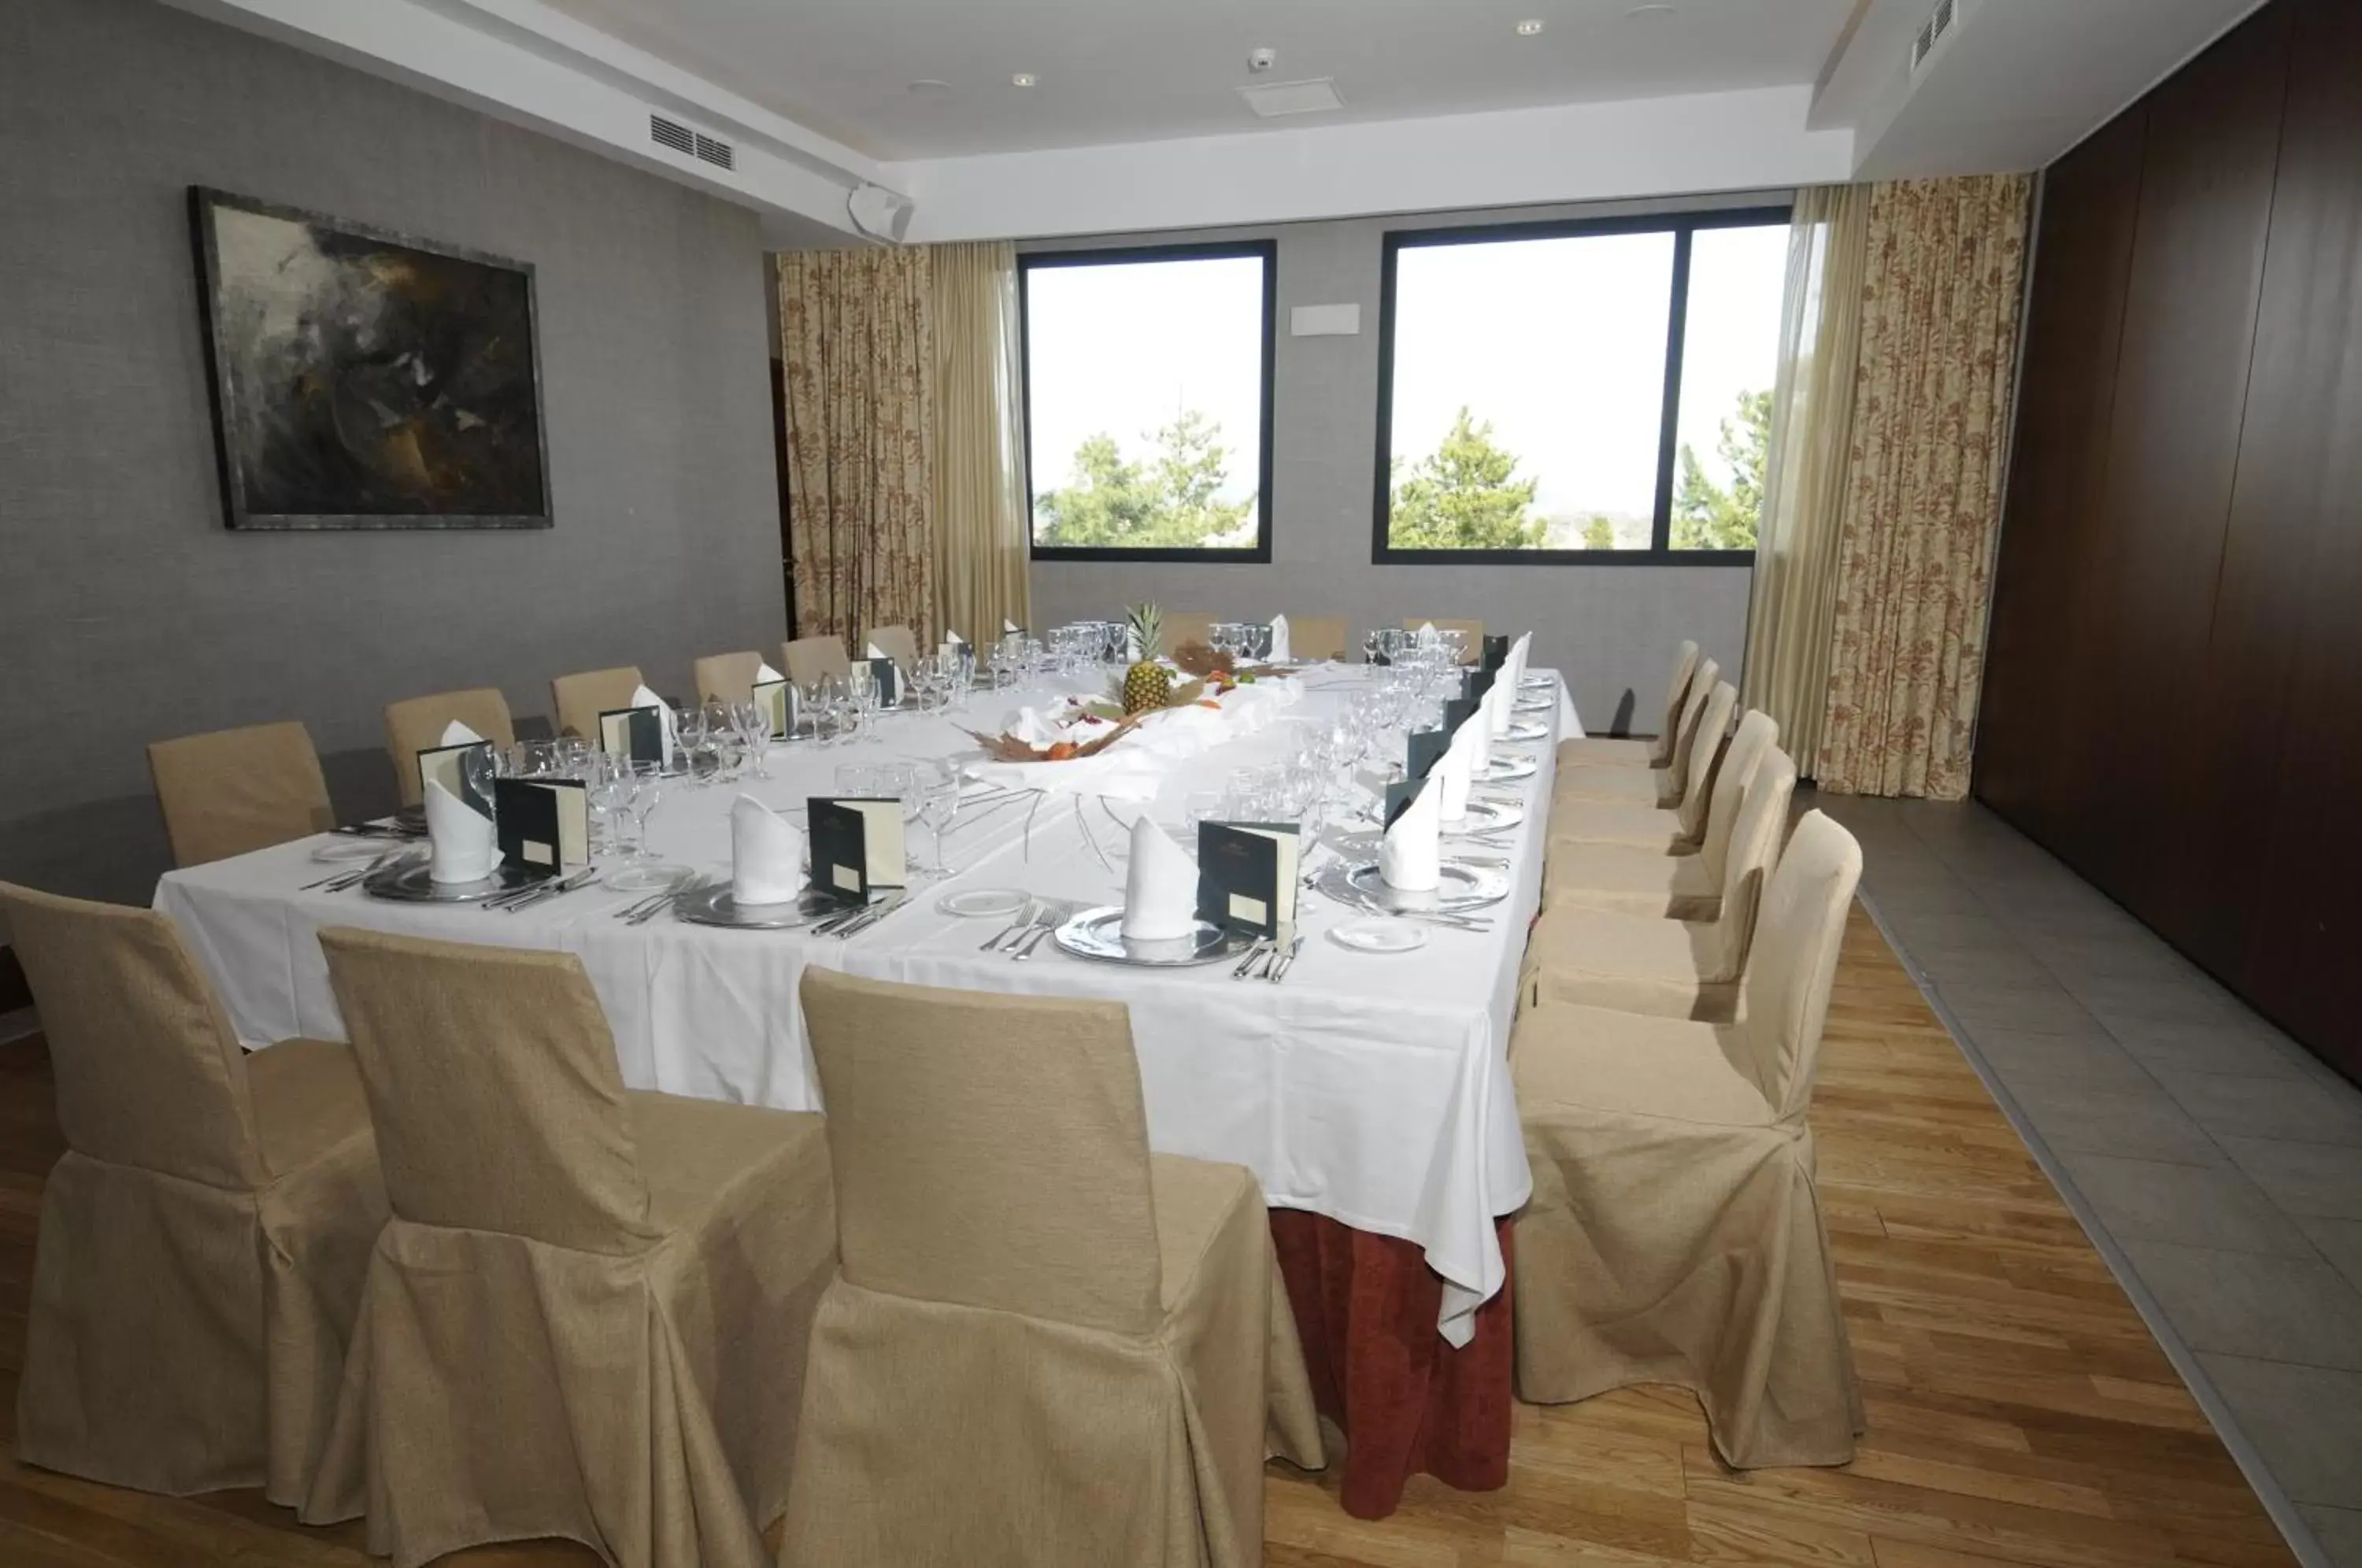 Banquet/Function facilities, Restaurant/Places to Eat in Parador de Soria